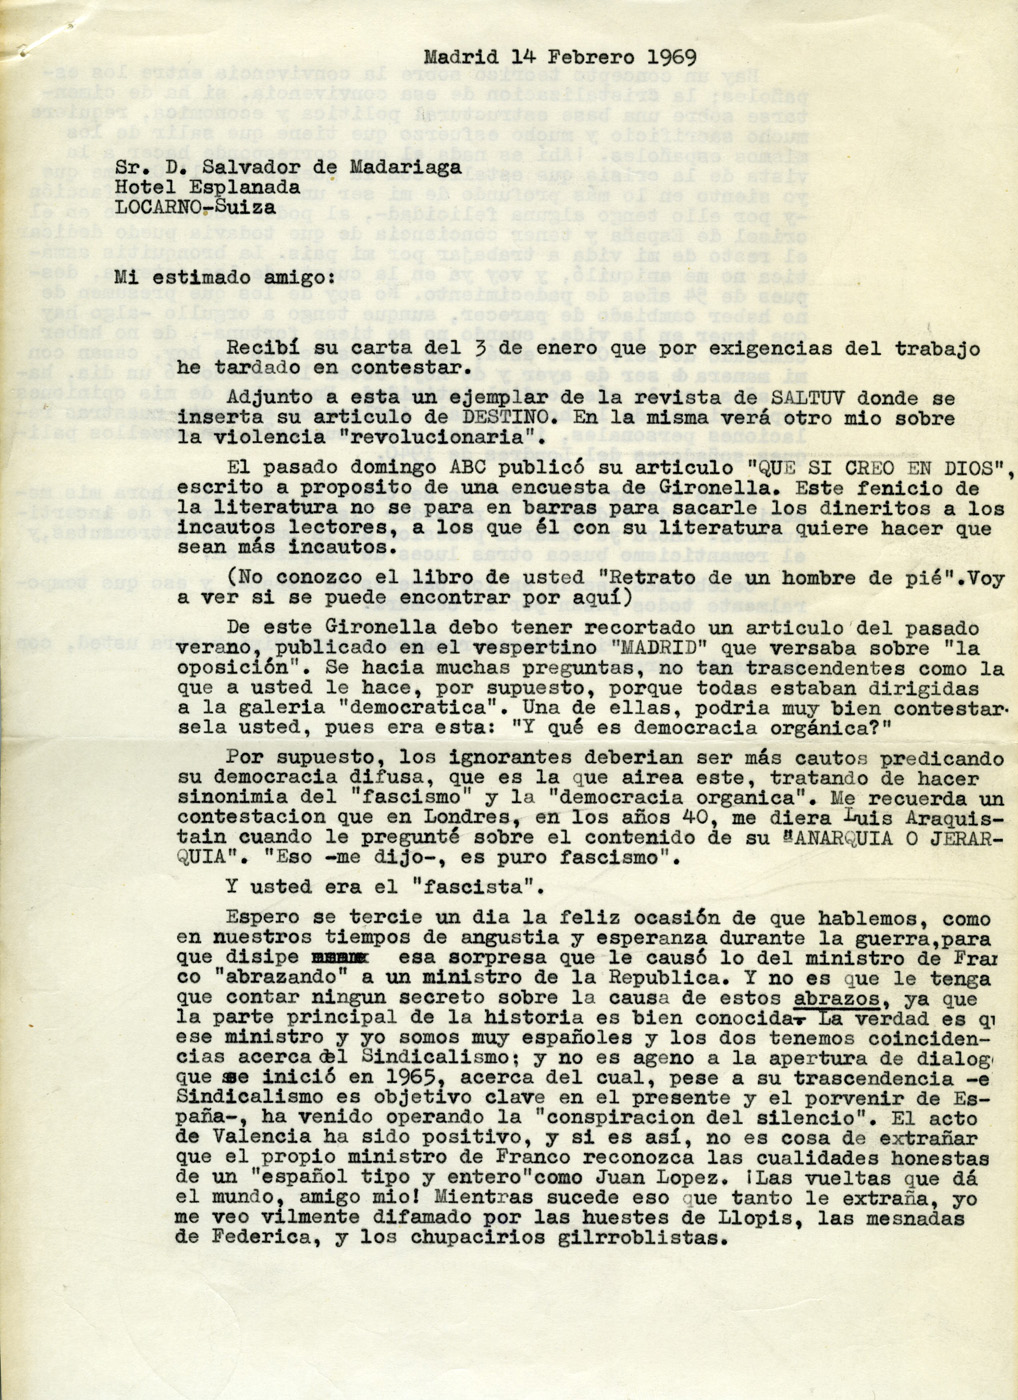 Carta a Salvador de Madariaga hablando de algunas publicaciones; de la importancia del sindicalismo en España; y de los cambios en sus ideas españolistas, apuntando que influyeron en parte las relaciones personales que tuvo con él en el exilio